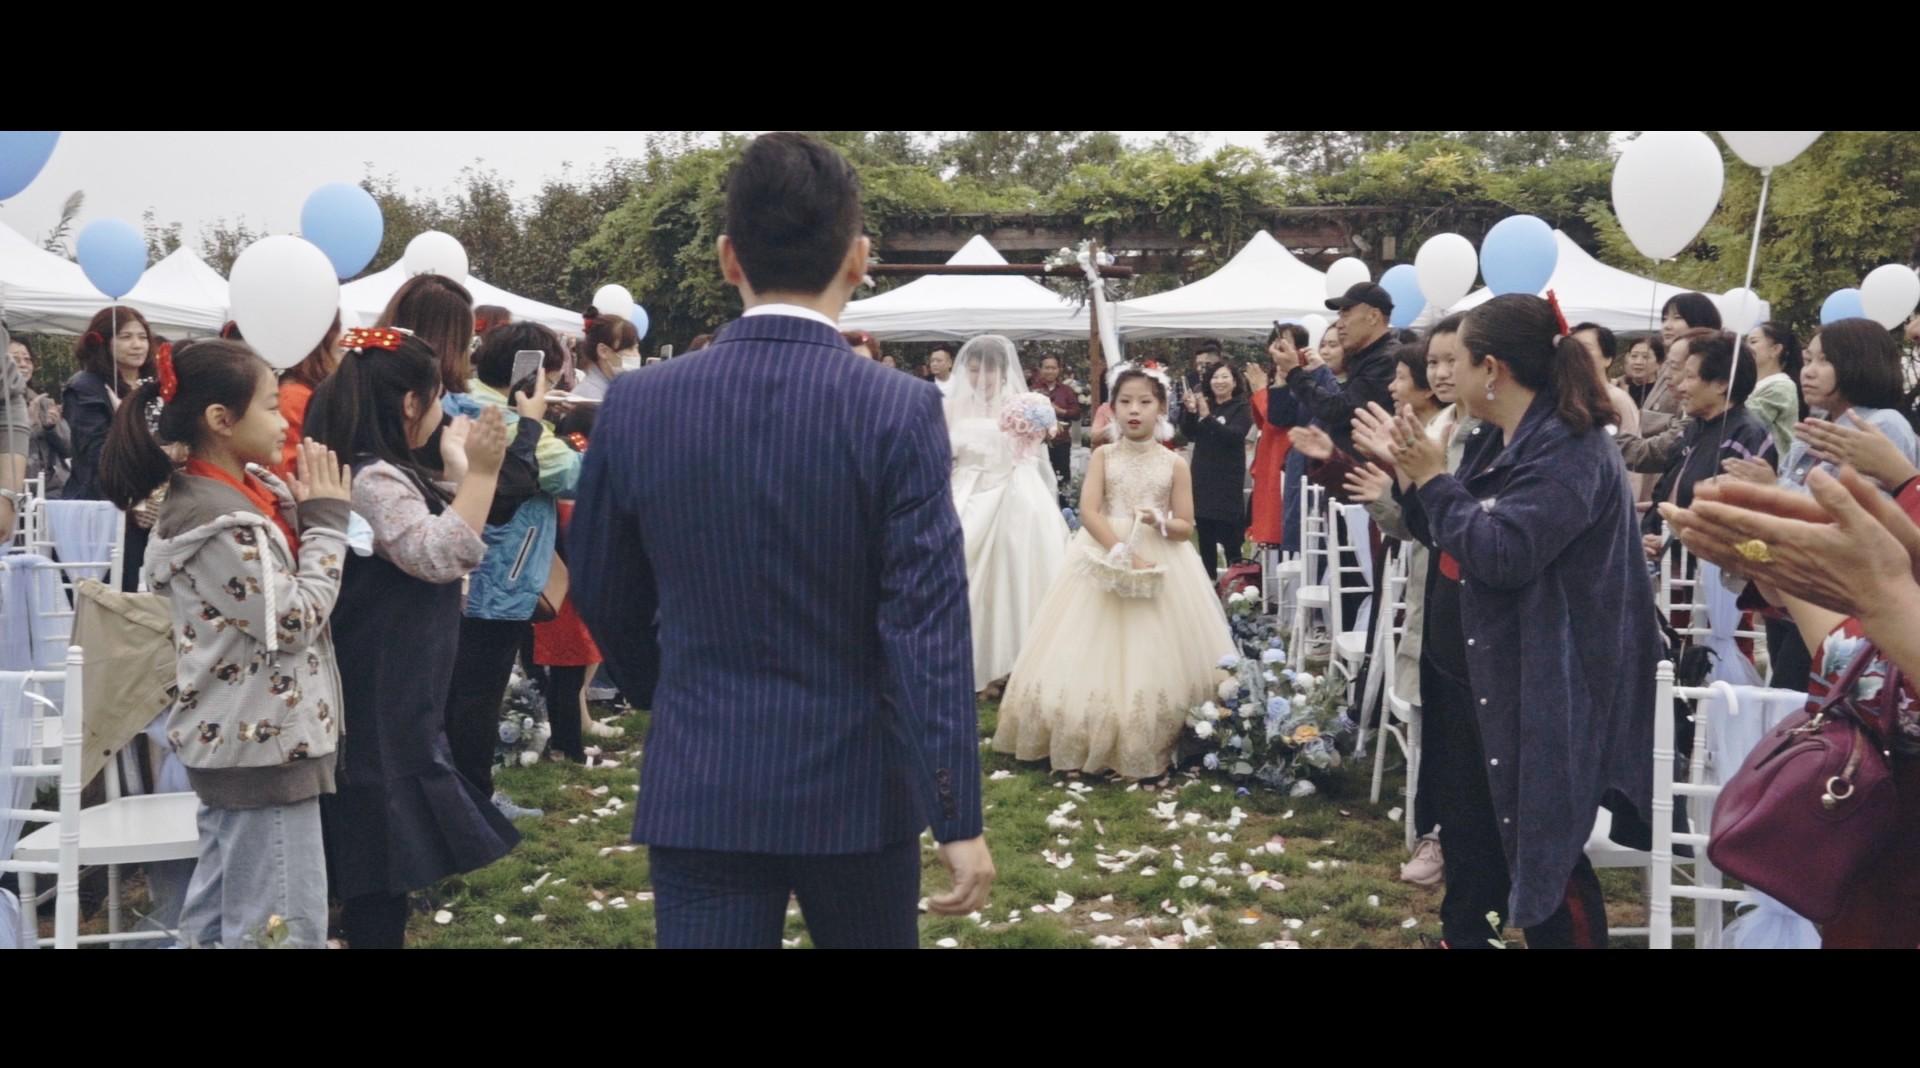 【婚礼MV】用镜头见证爱情